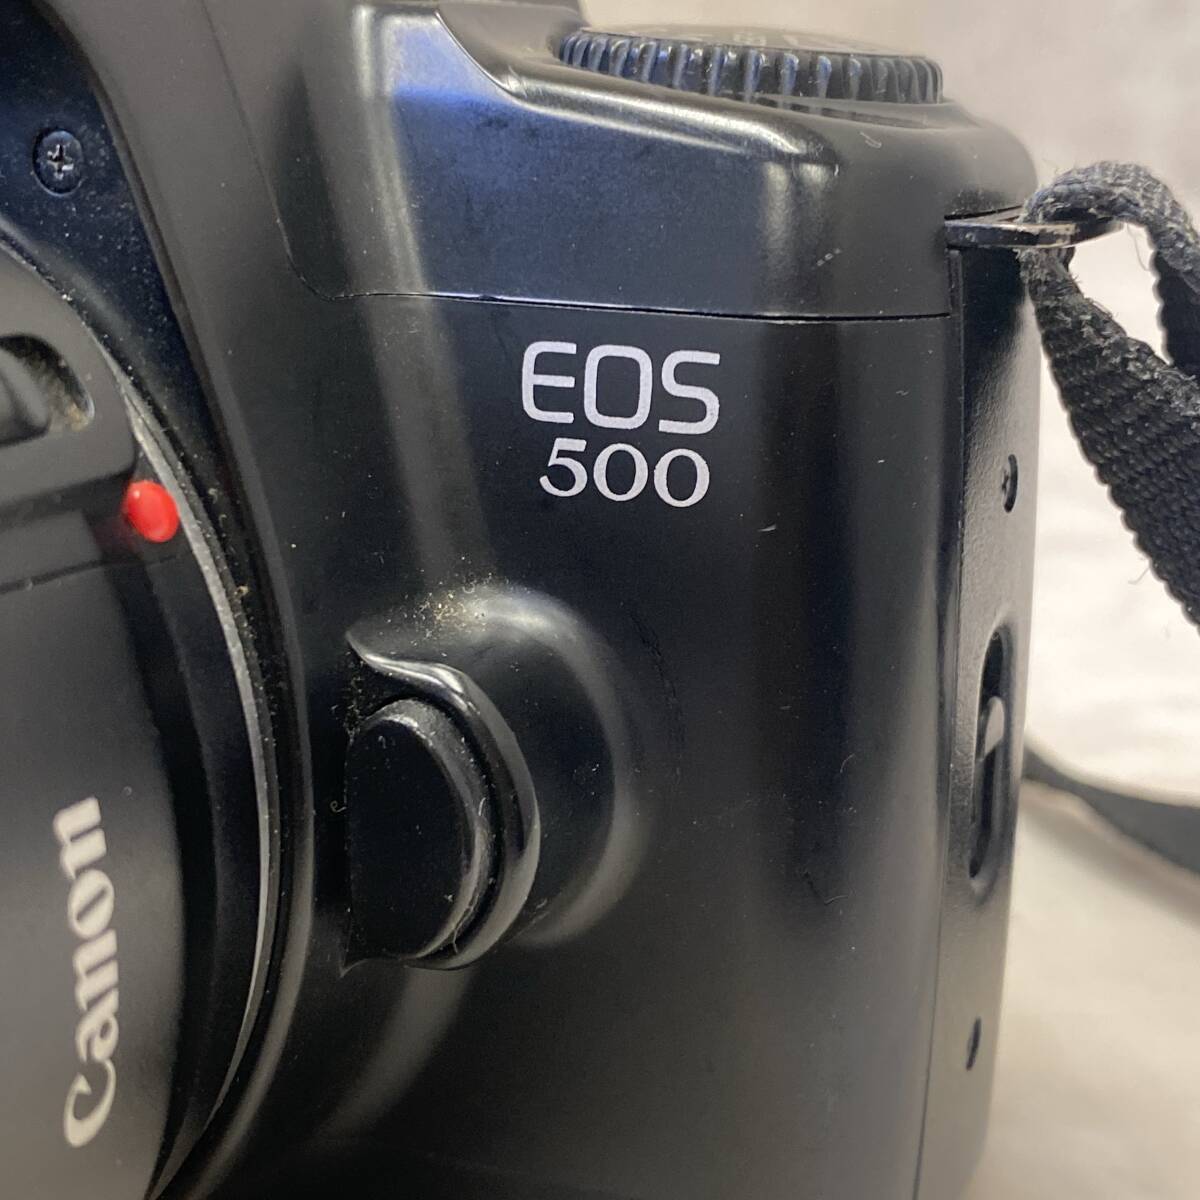  【値下げ 送料無料】 フィルム一眼レフカメラ CANON EOS500 初代EOS KISS 欧州向け輸出モデル レンズ付 電池交換済 動作品 現状品 A410-2_画像2